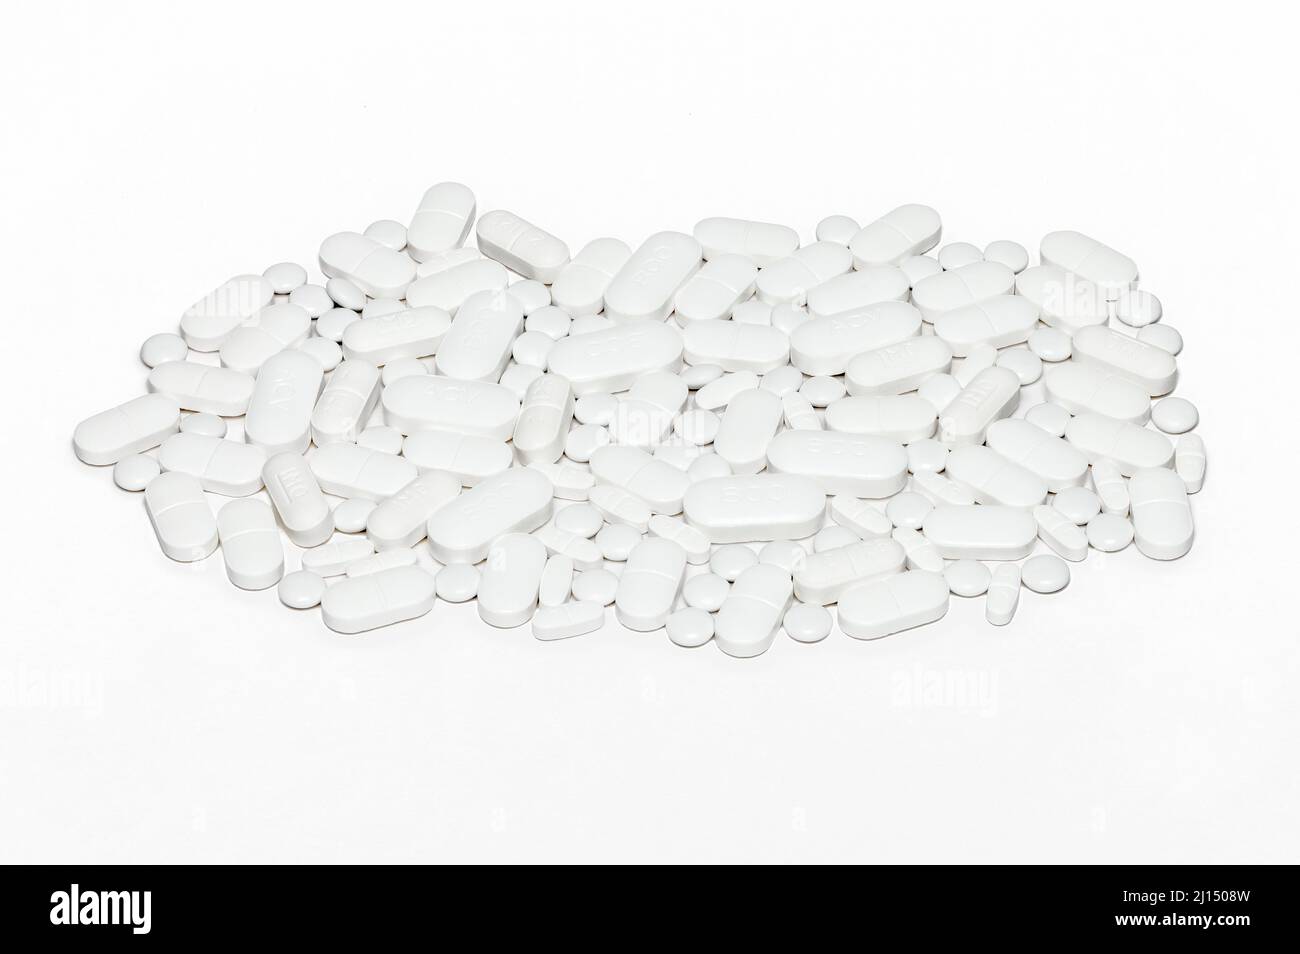 Auswahl von Pillen und Tabletten auf reinem weißen Hintergrund, Platz für Kopie - Prophylaxe-Pillen für Krebspatienten Stockfoto